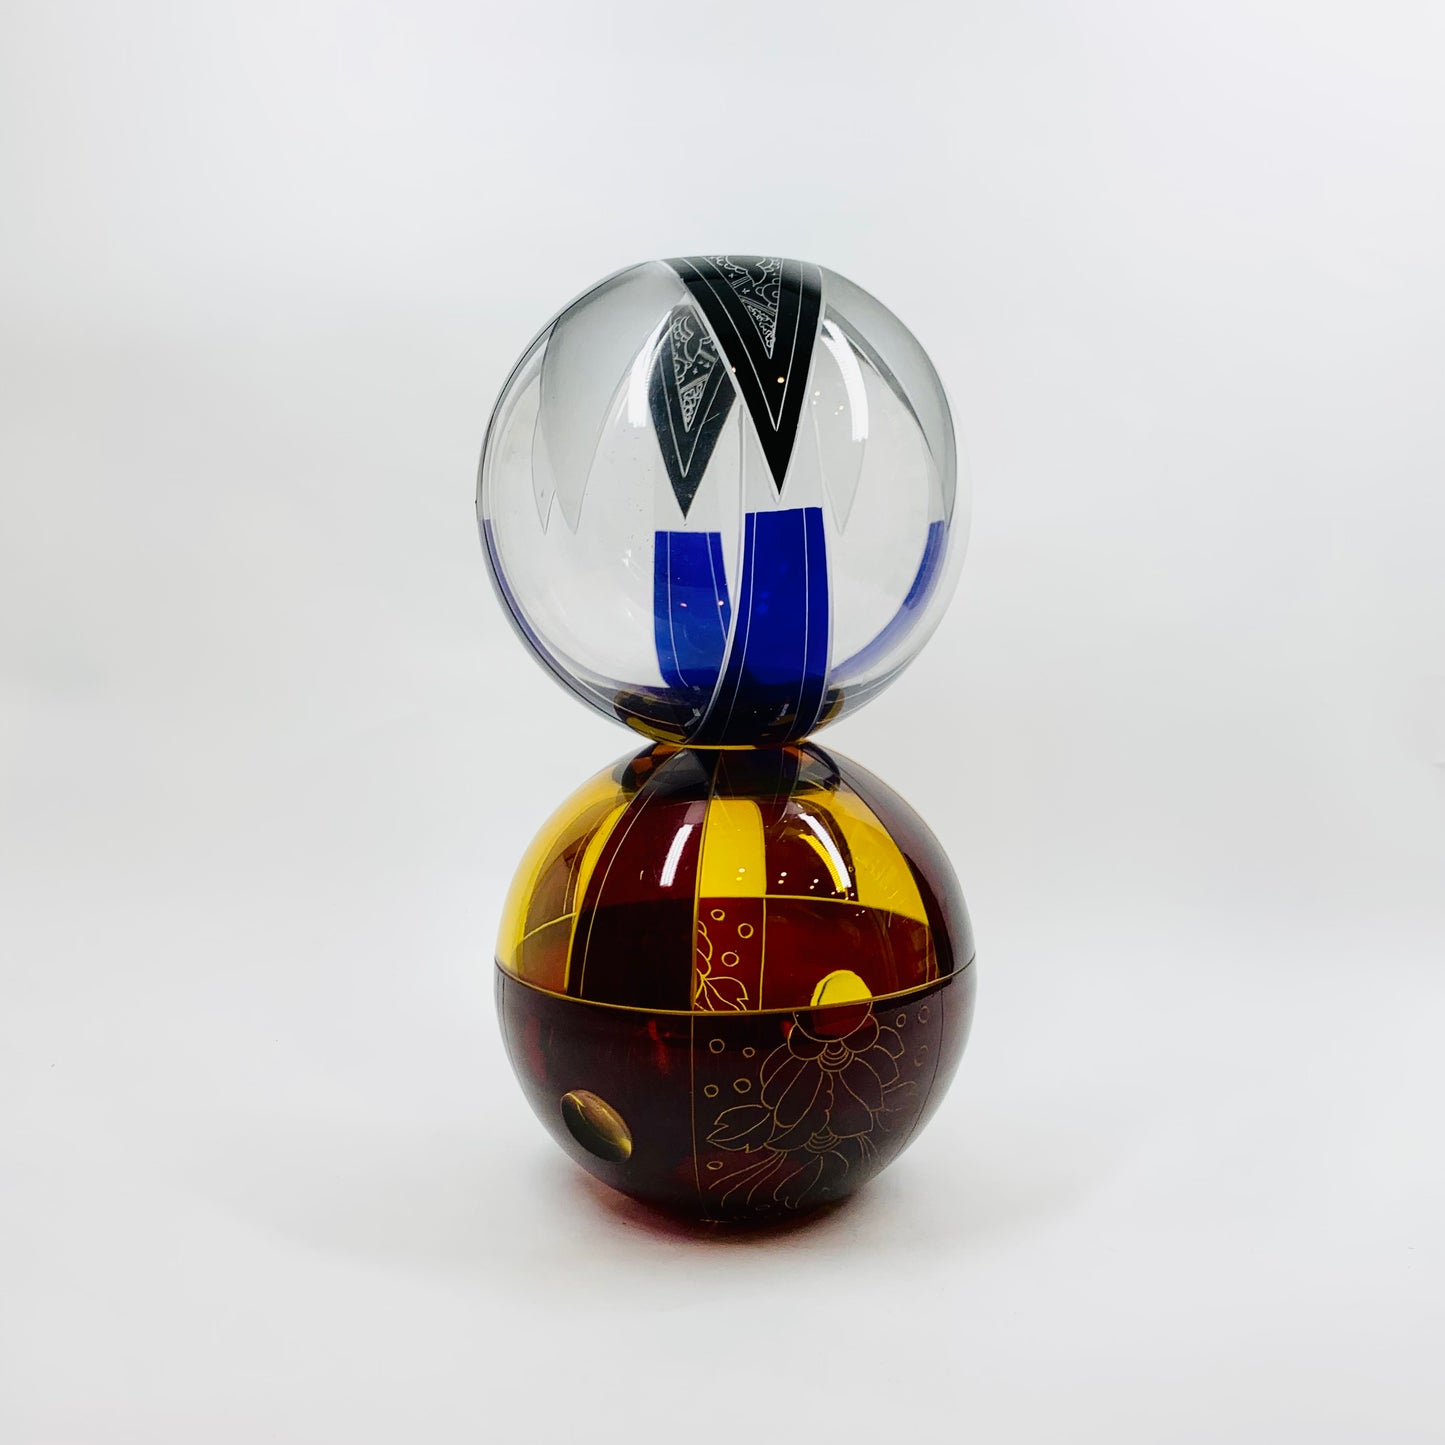 Antique Art Deco ruby enamel globe citrine glass posy vase by Karl Palda